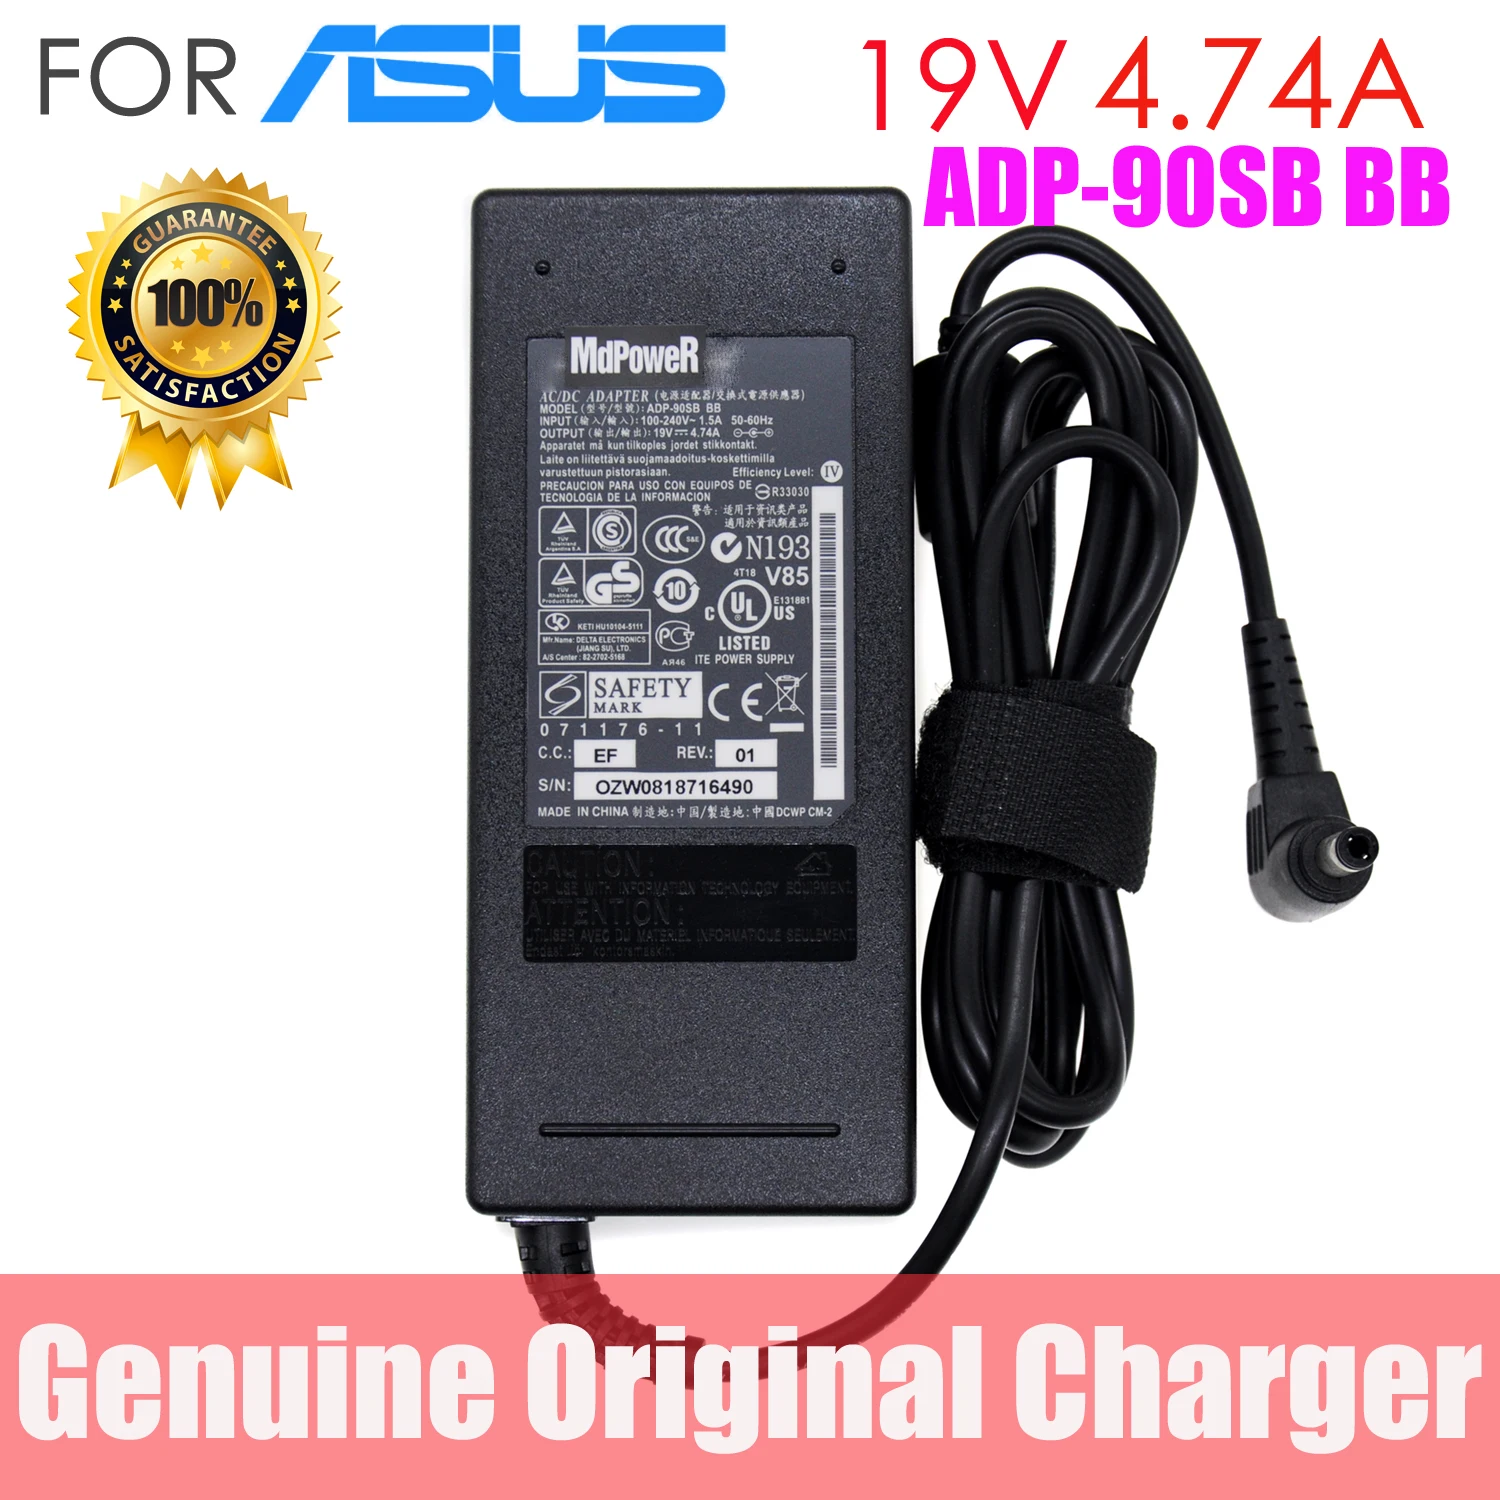 

Для ASUS 19V 4.74A ADP-90SB BB 90W блок питания для ноутбука, адаптер переменного тока, зарядное устройство для планшетов A53S A53U A55A A55VD 5,5*2,5 мм